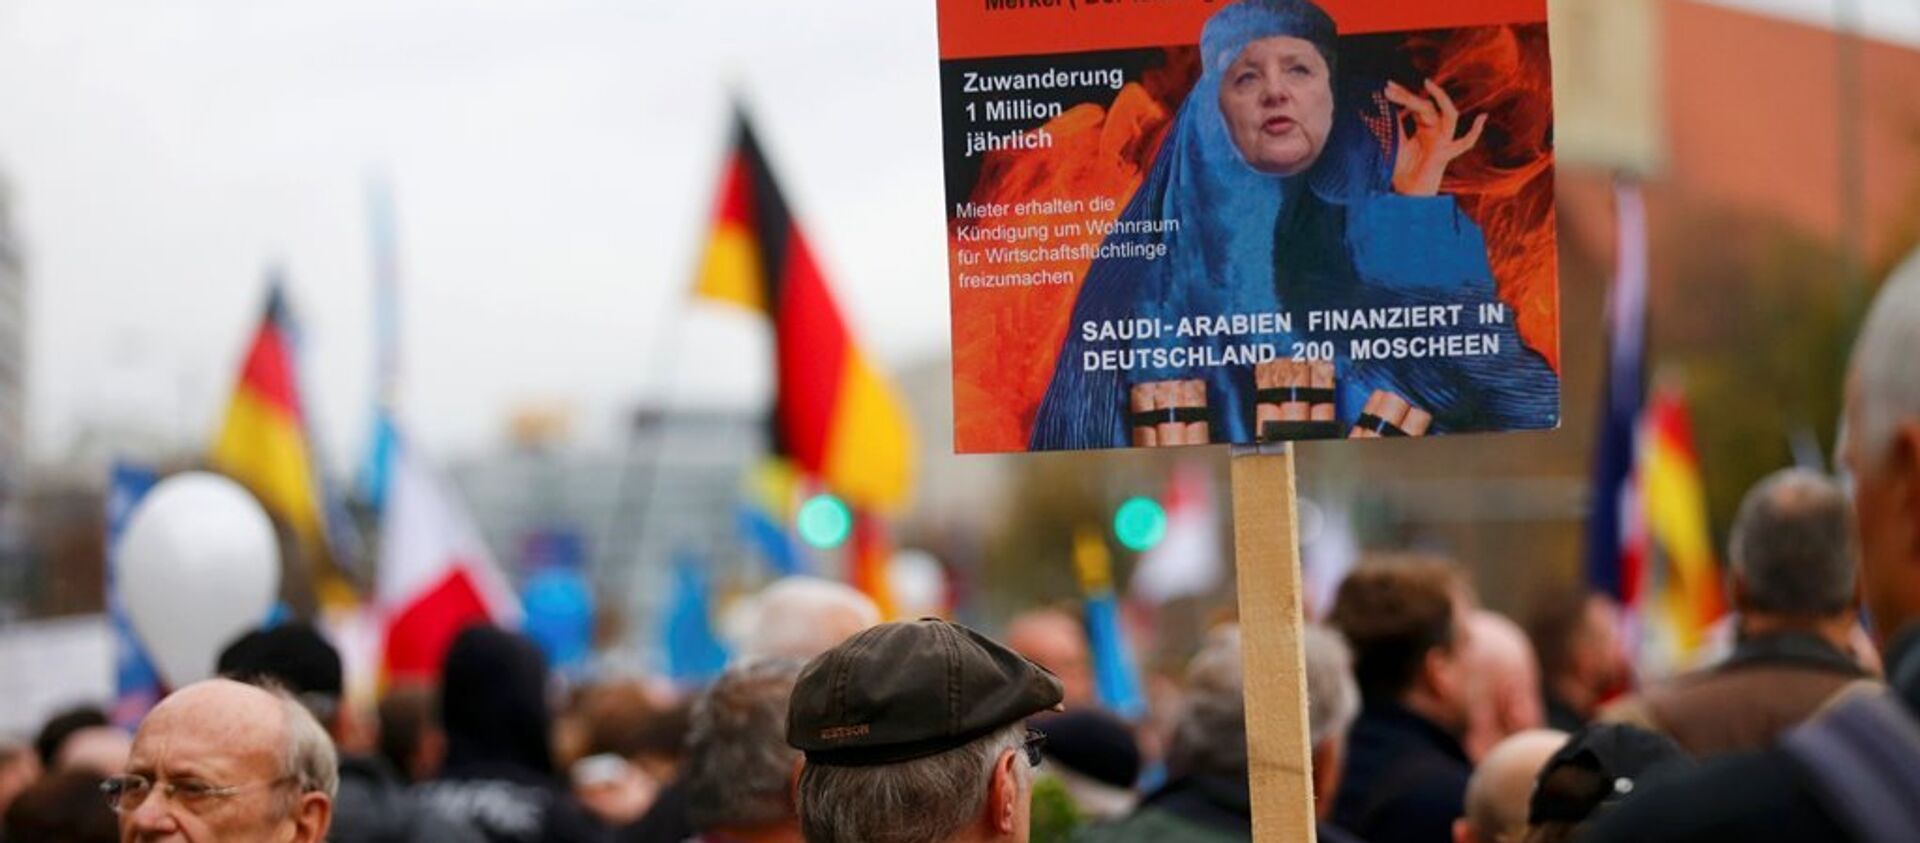 Almanya'nın başkenti Berlin'de göçmen karşıtı AfD Partisinin düzenlediği yürüyüşte binlerce kişi katıldı. - Sputnik Türkiye, 1920, 04.03.2021